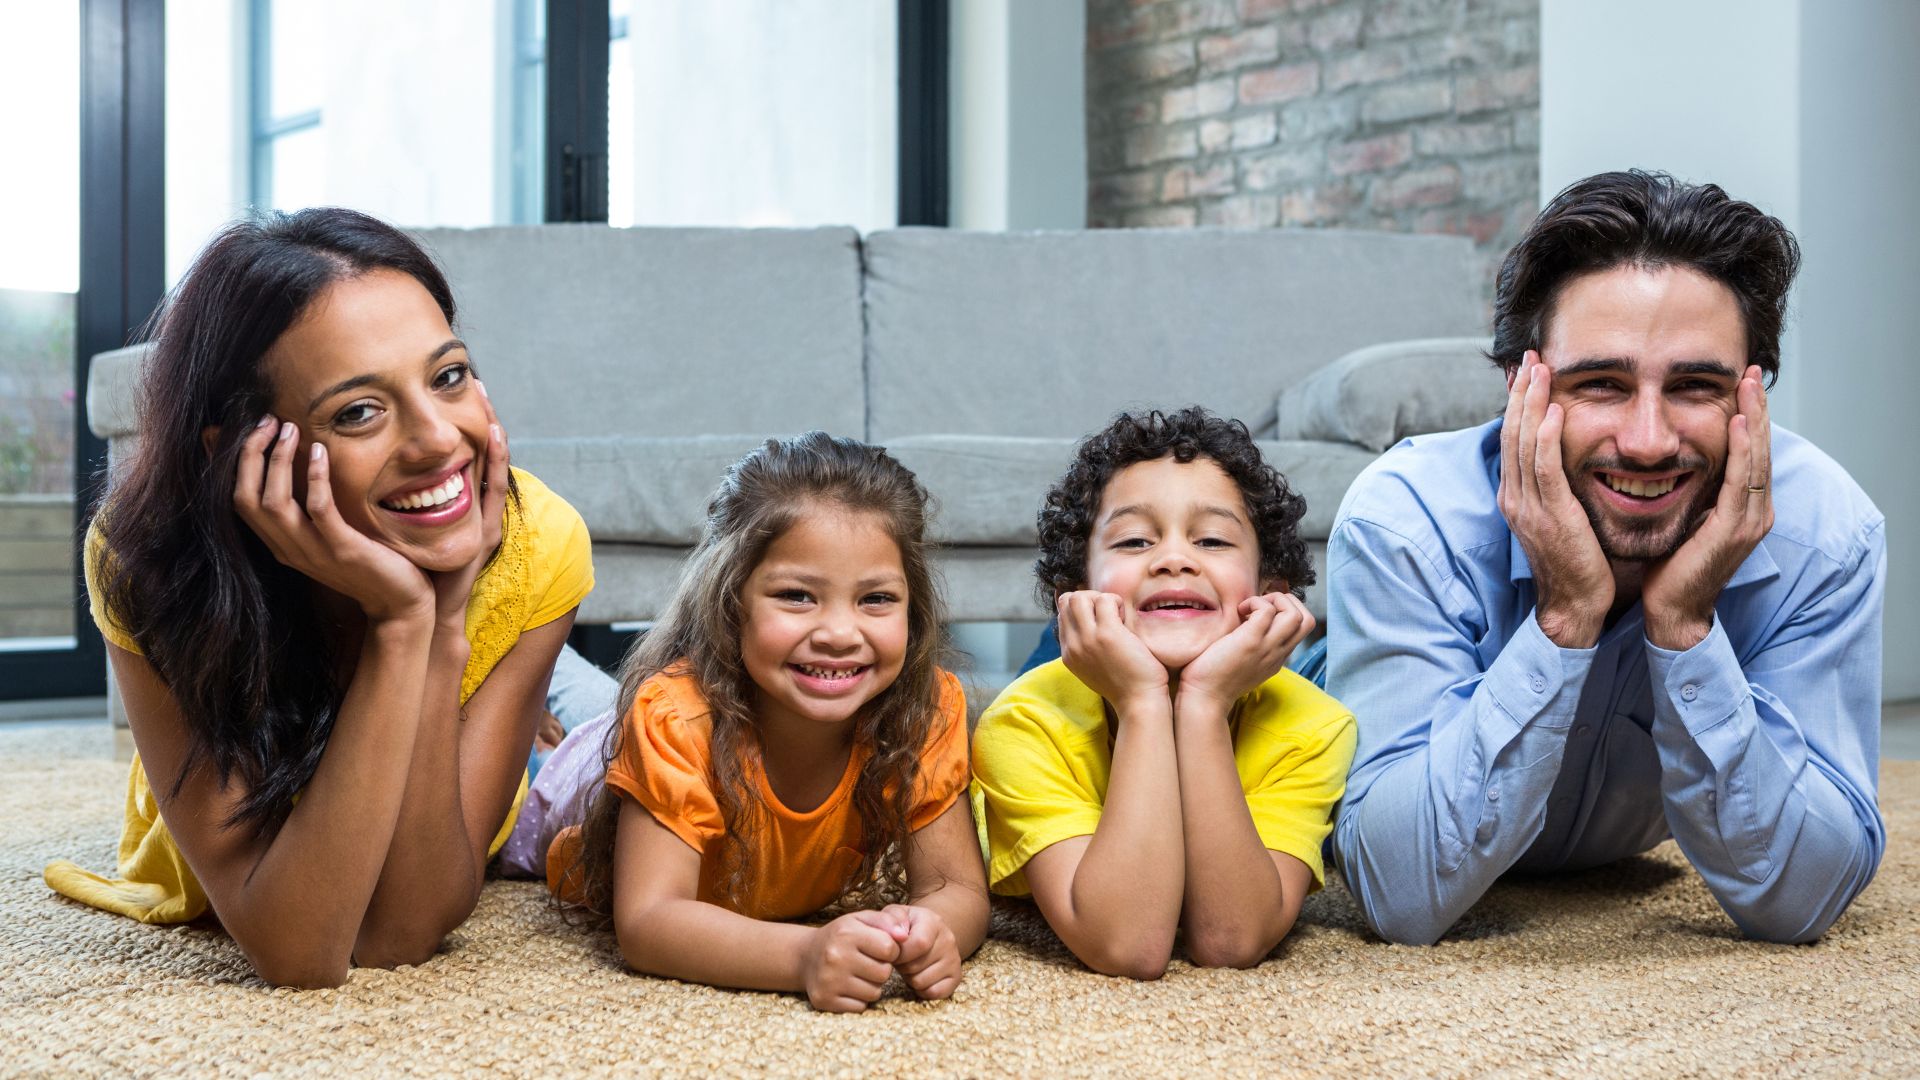 Smiling family on carpet in living room